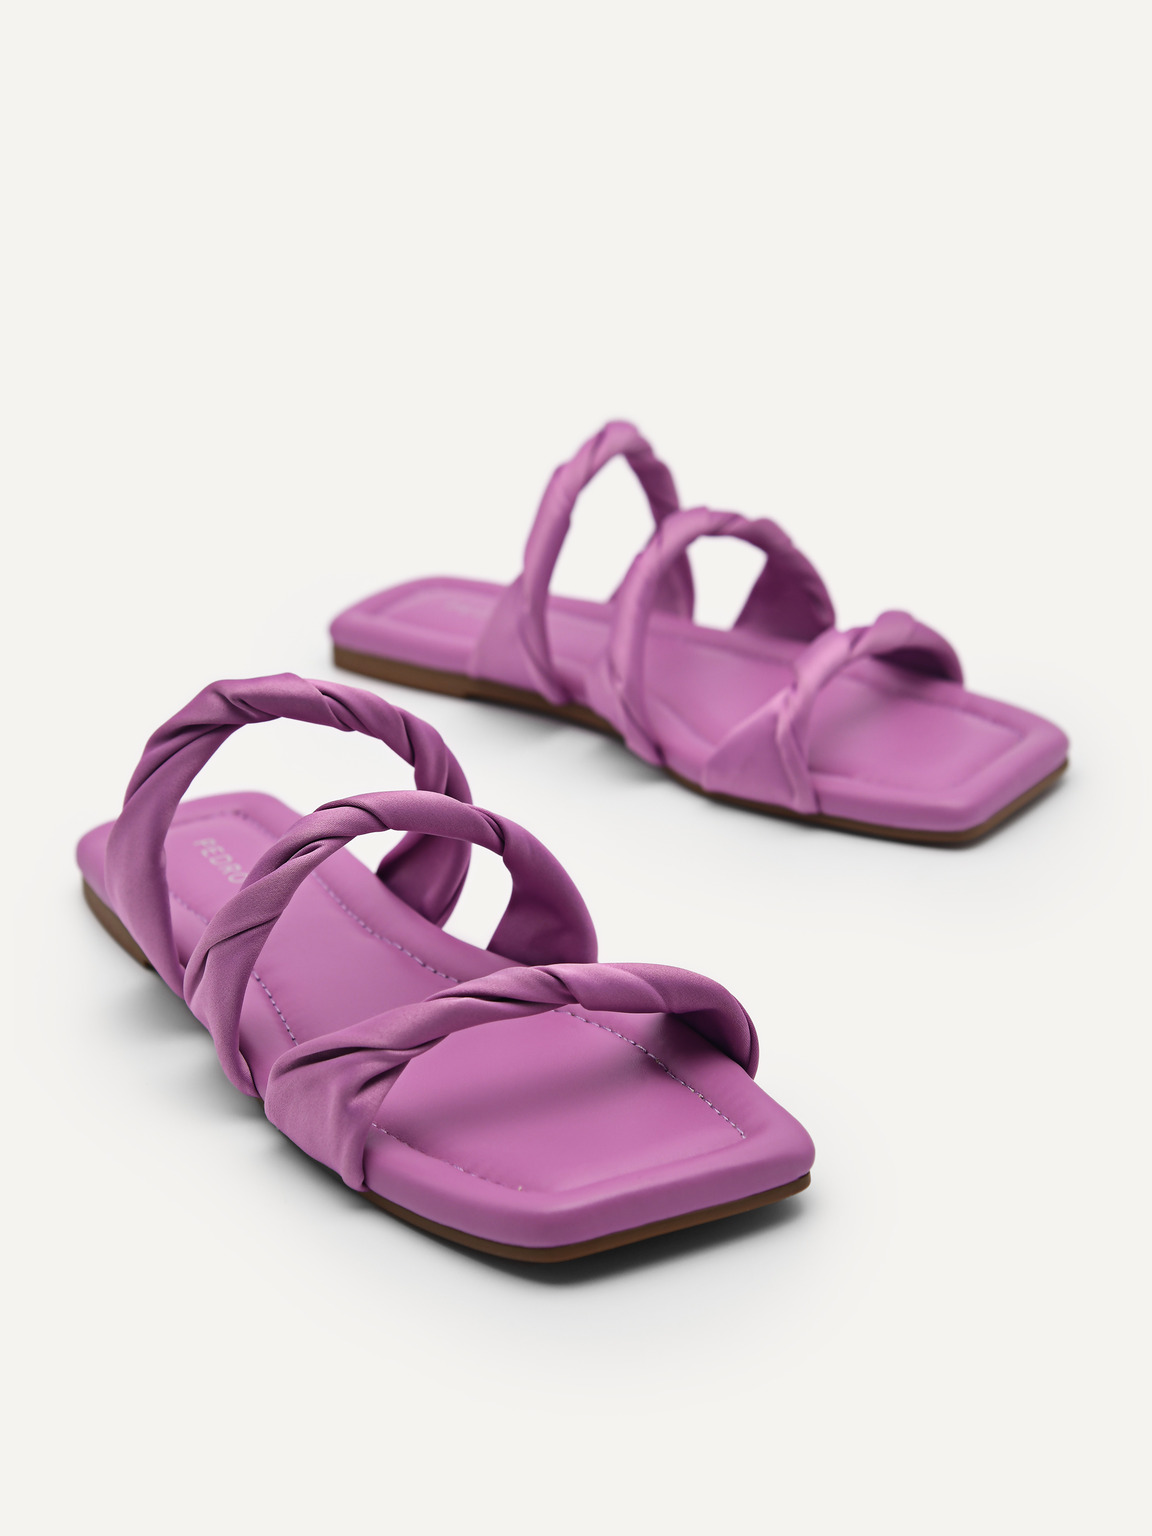 Arch平底鞋, 紫色